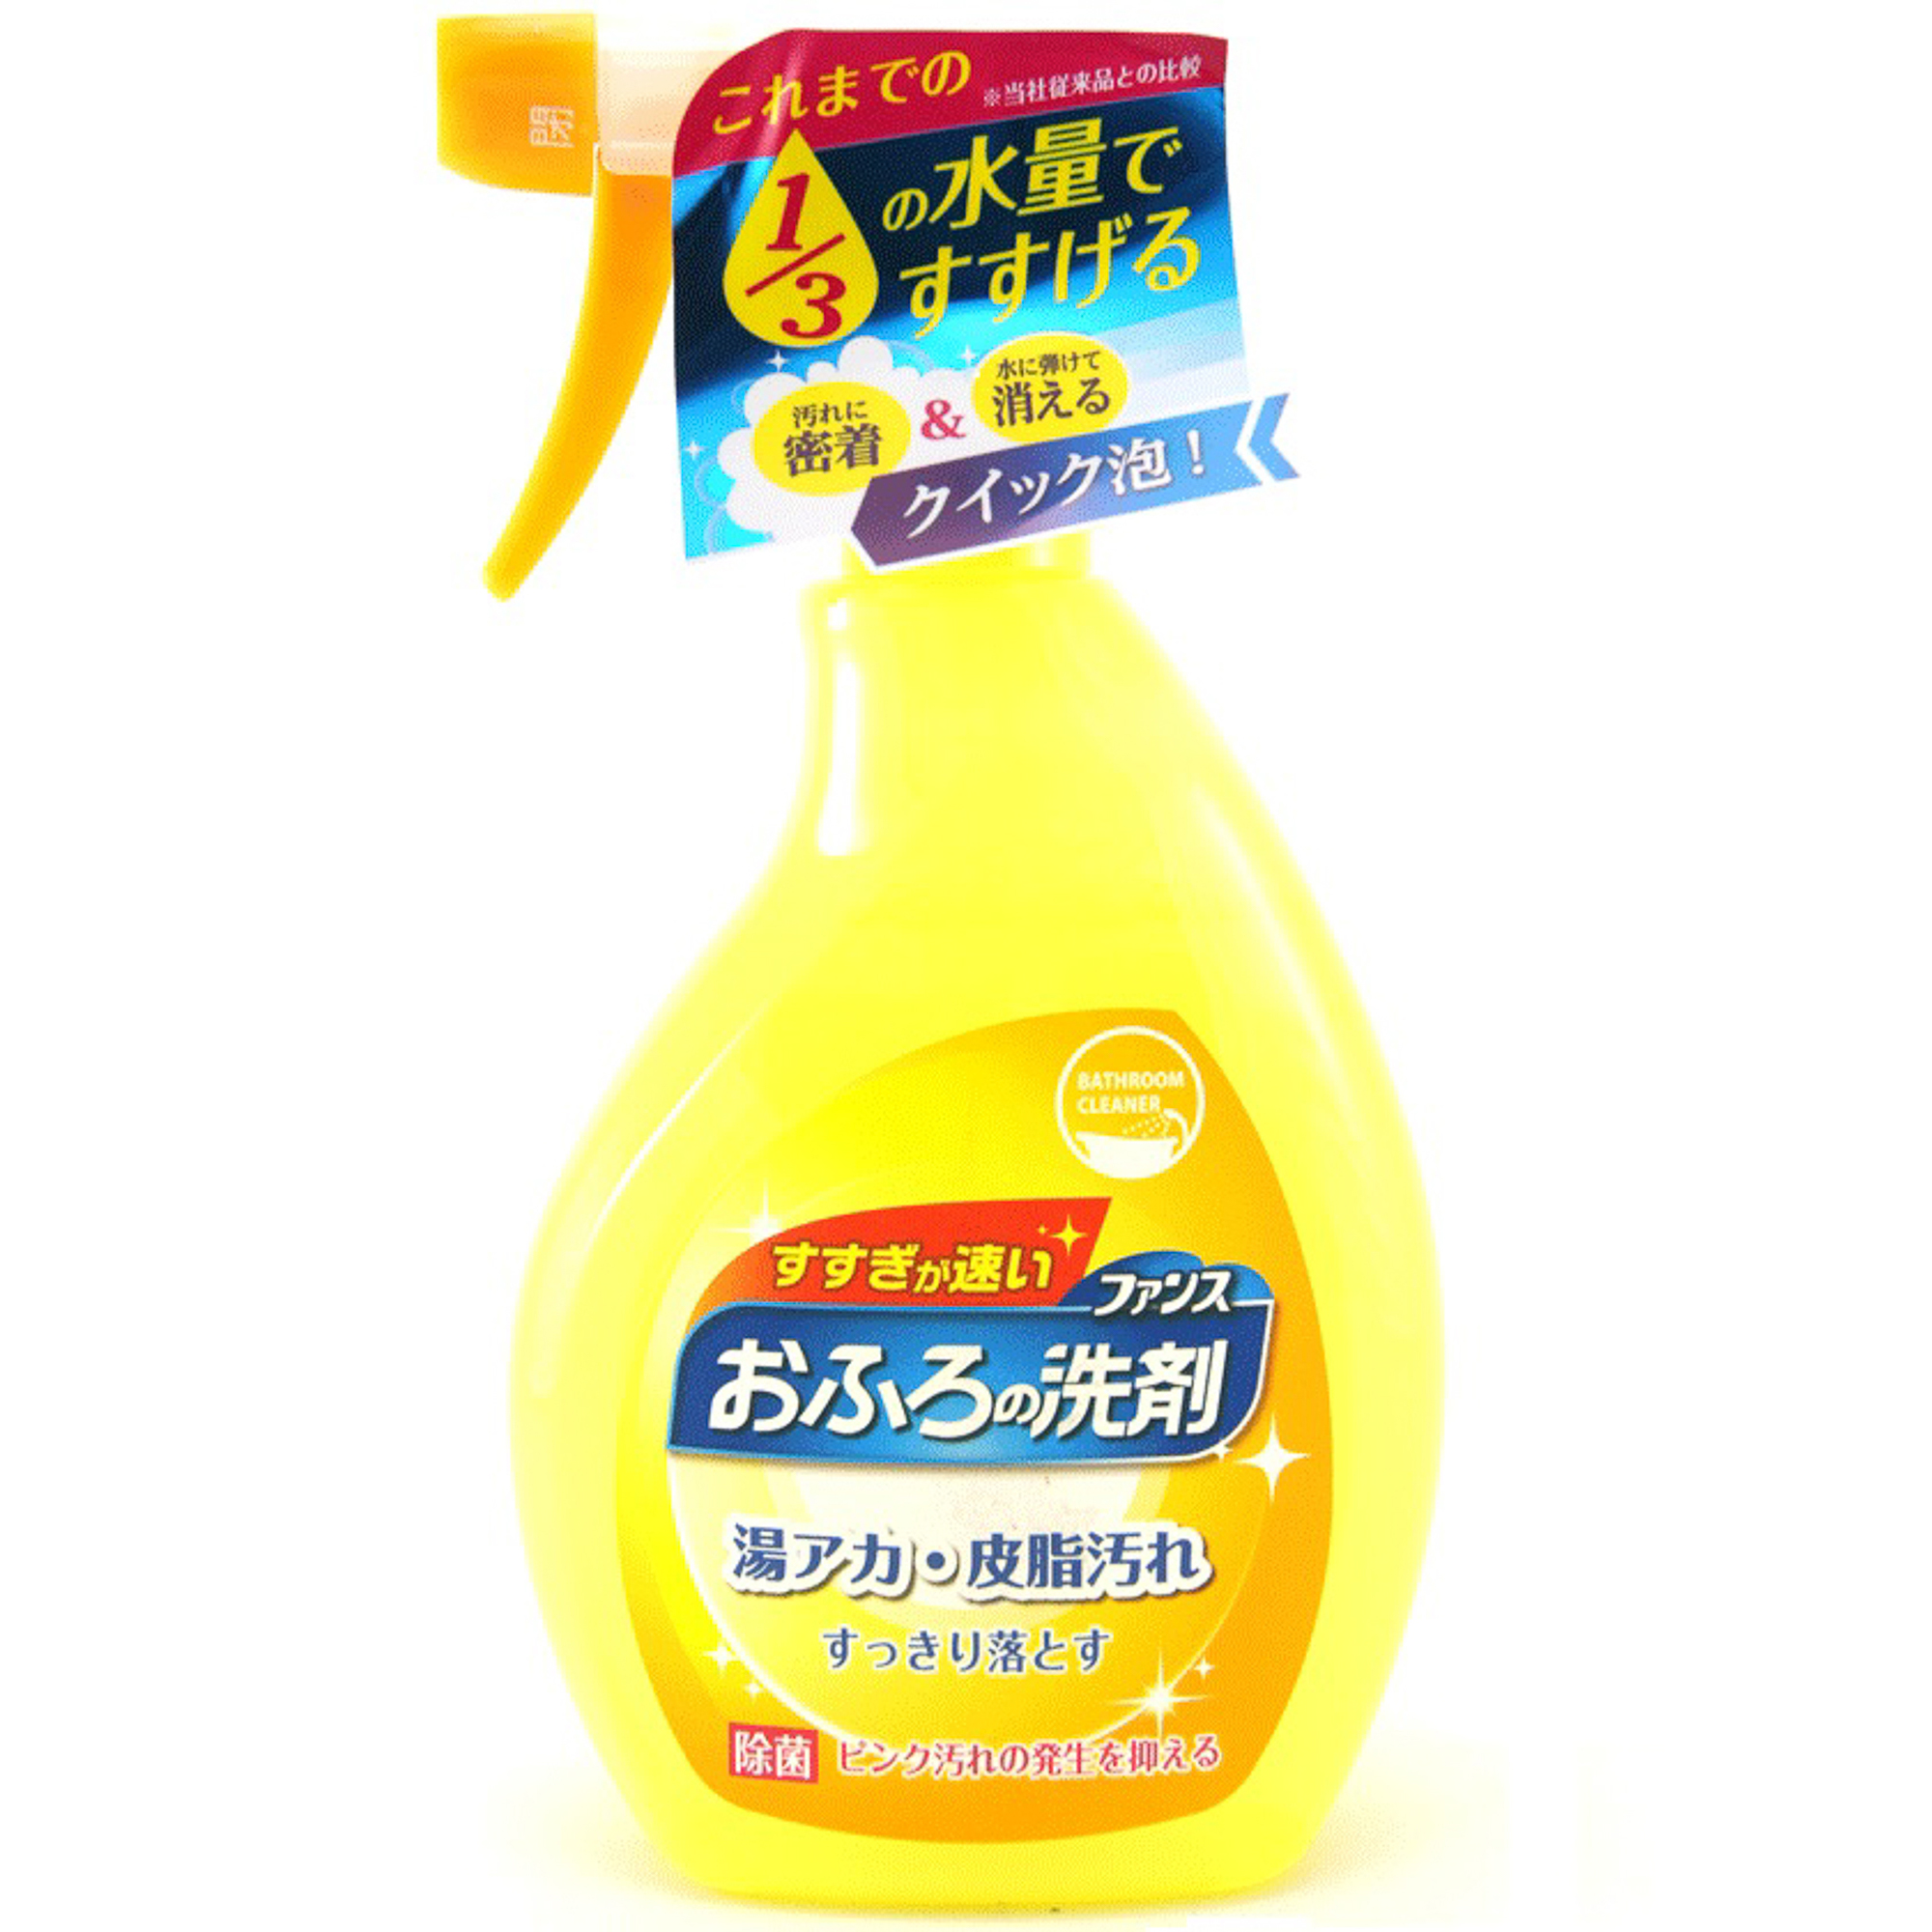 Спрей пенный Daiichi Ofuro для чистки в ванной комнате 380 мл спрей пенный daiichi ofuro для чистки в ванной комнате 380 мл